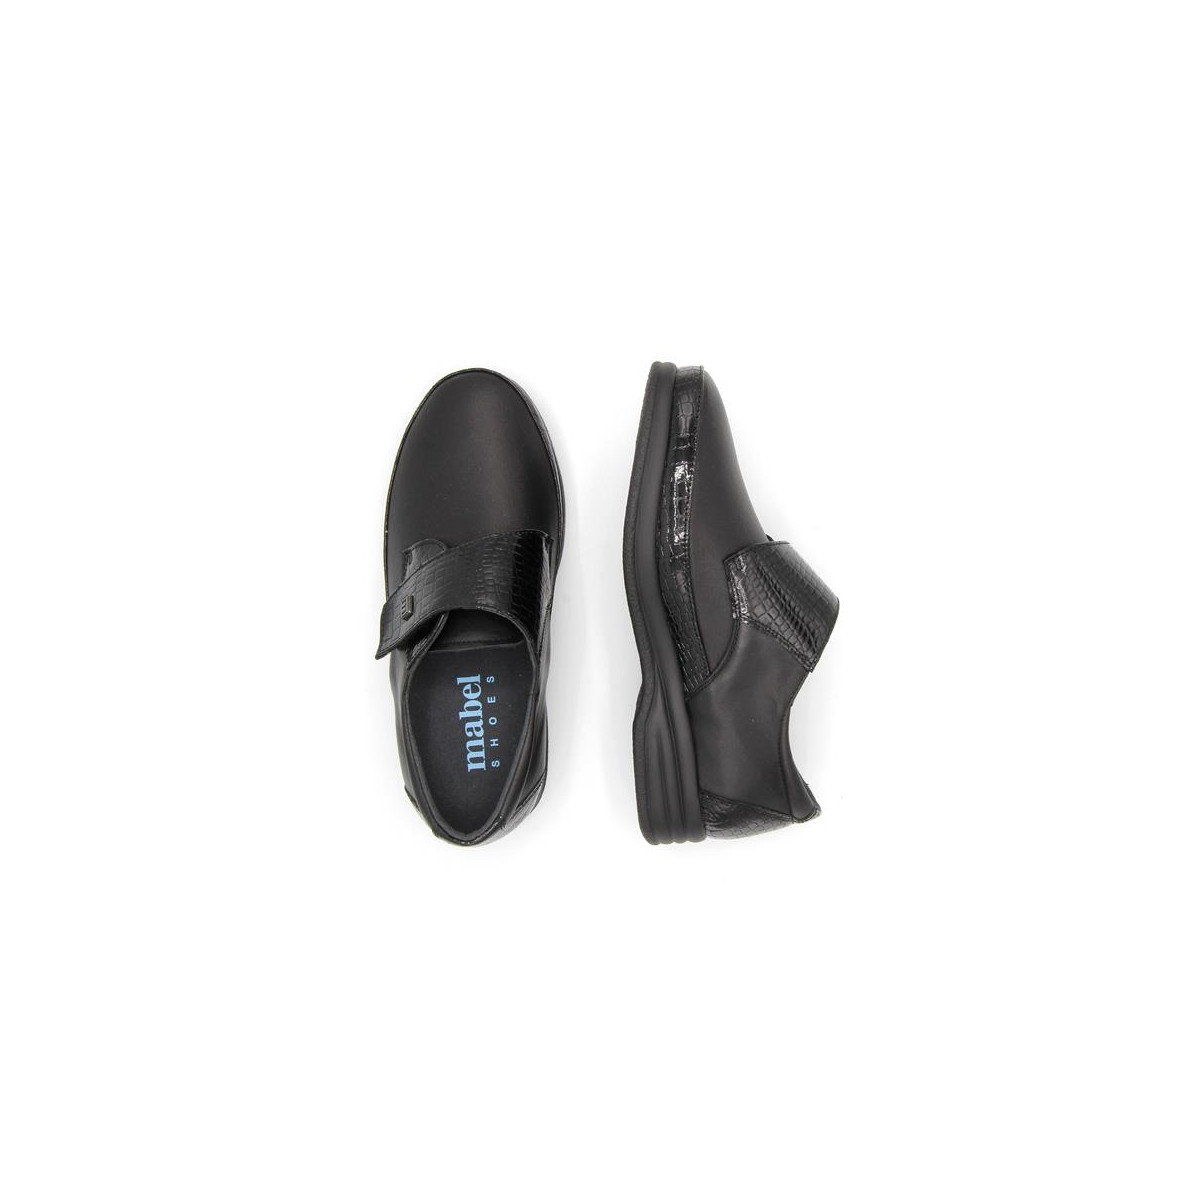 Chaussures hallux valgus à détails verni effet croco - Noir - Mabel Shoes